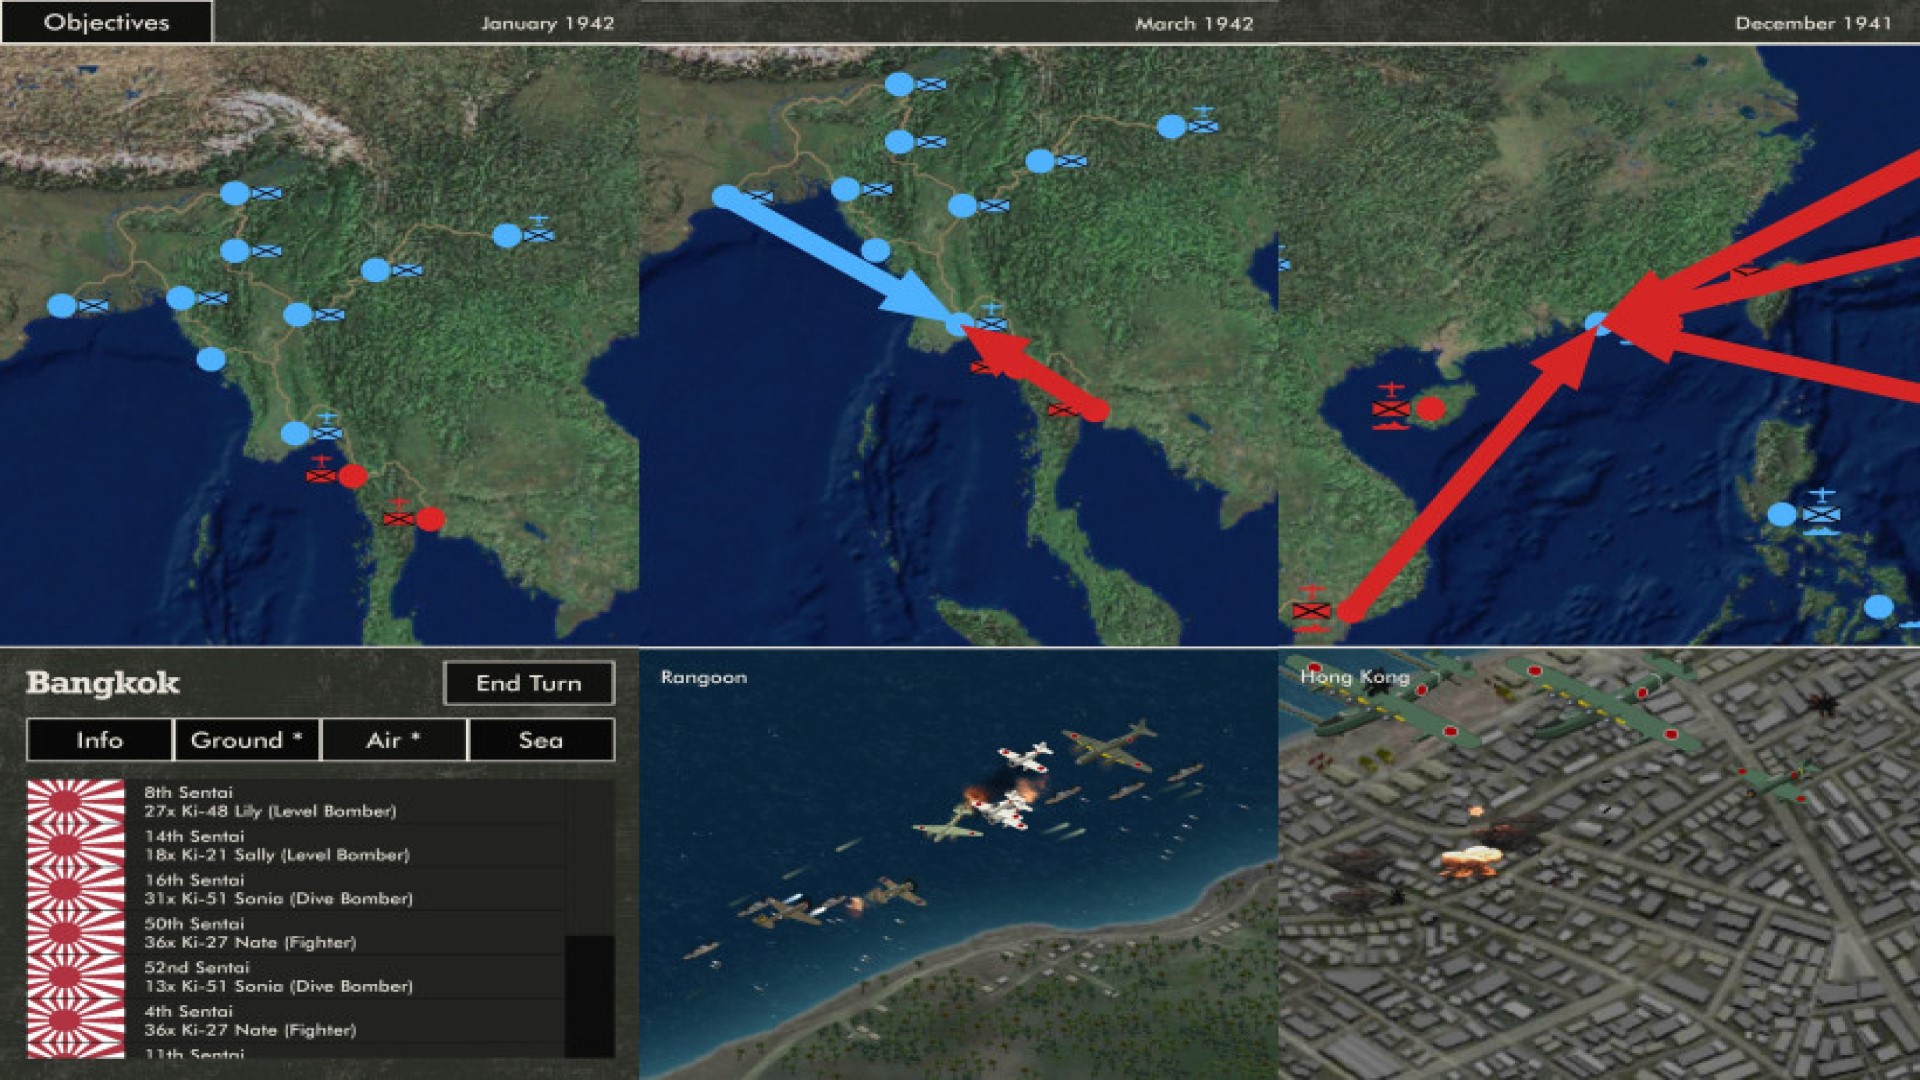 بهترین بازی های جنگی موبایل: آتش سوزی اقیانوس آرام. تصویر نقشه های استراتژیک یک ماسه زمین را در کنار دریا نشان می دهد